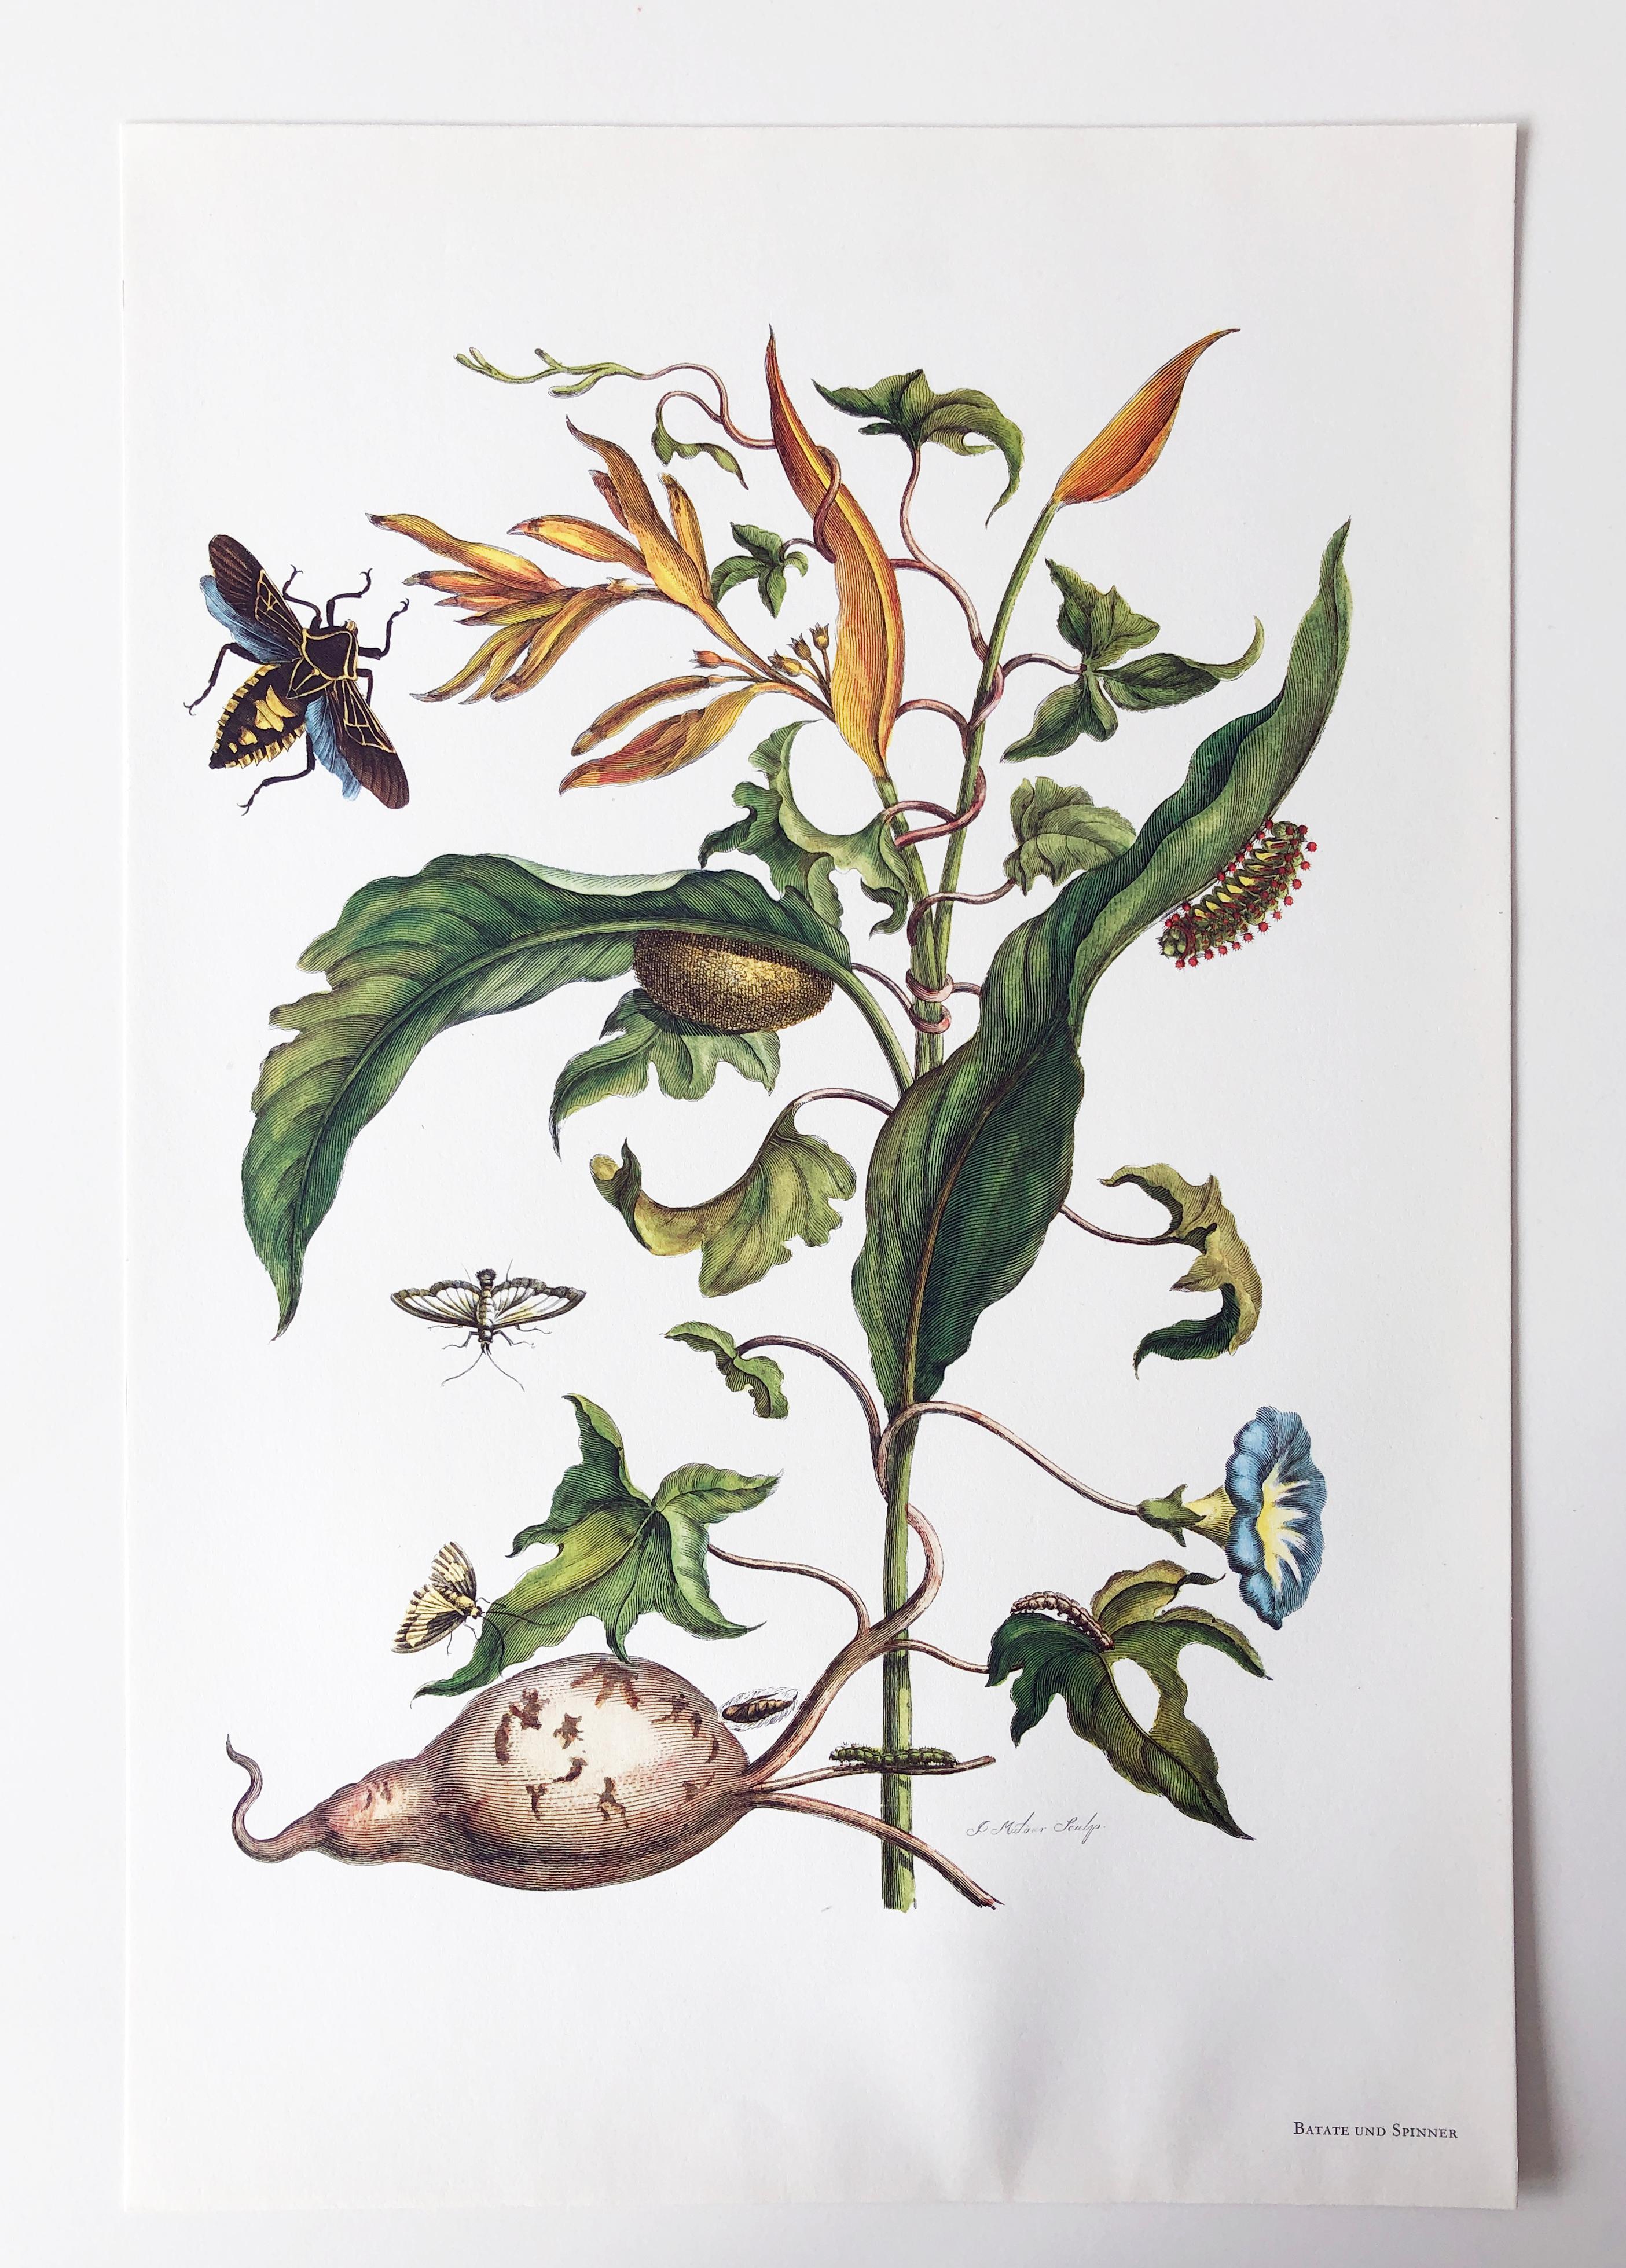 Extrait de Metamorphosis Insectorum Surinamensium, publié pour la première fois en 1705
Gravures de J. Mulder, P. Sluyter (Sluiter) et D. Stoopendaal d'après Maria Sybilla Merian.

Cette plaque fait partie d'une collection complète comprenant 17